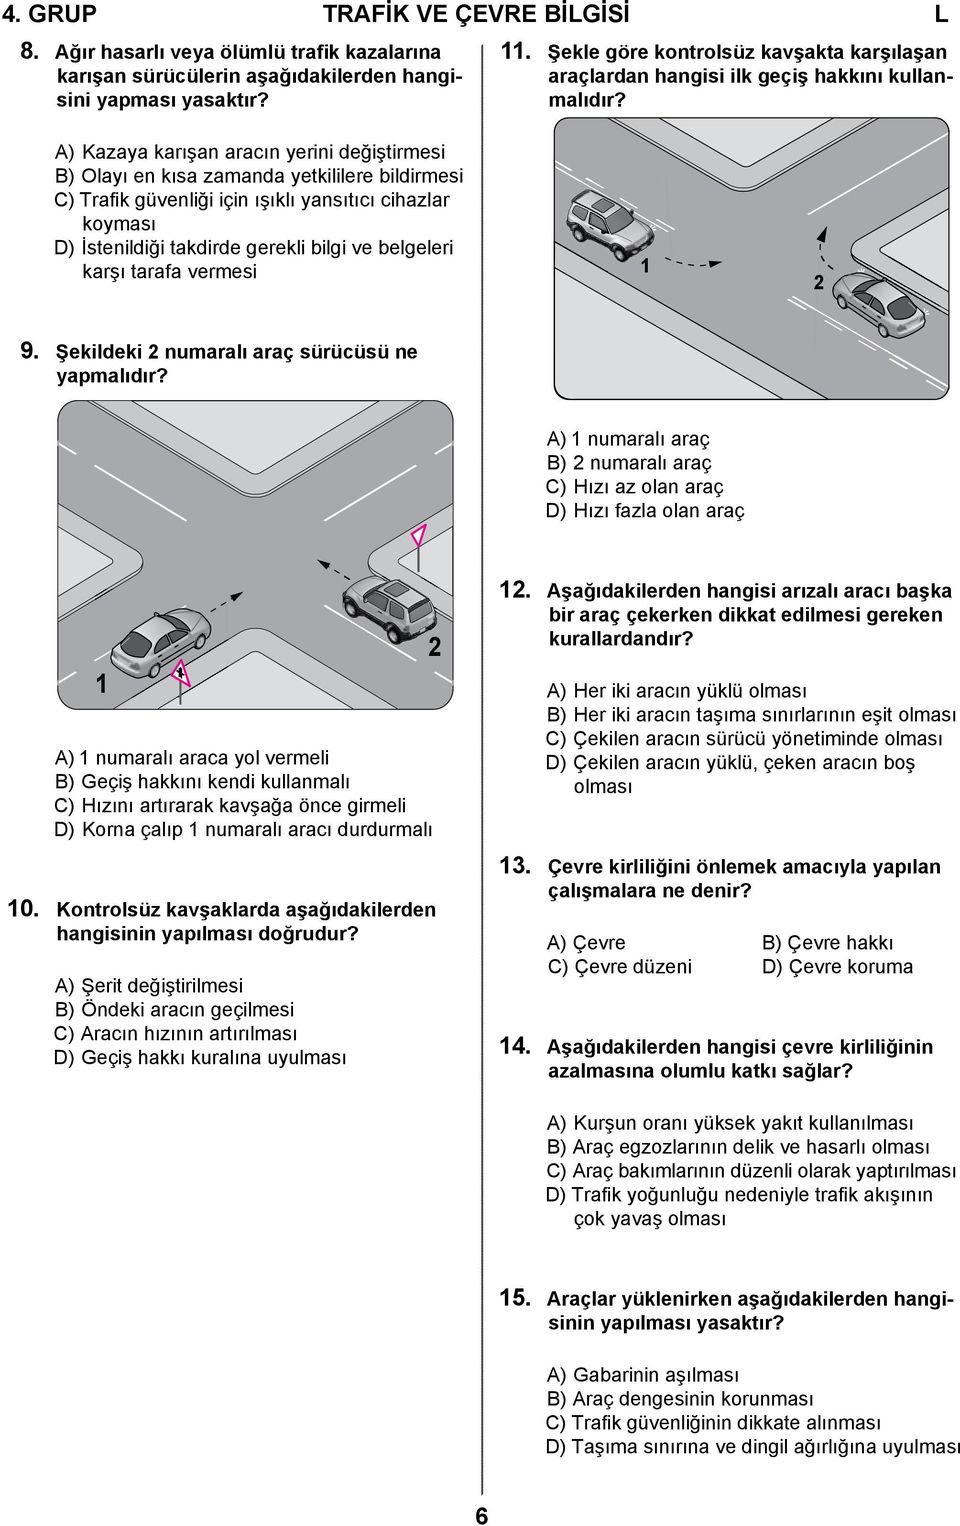 A) Kazaya karışan aracın yerini değiştirmesi B) Olayı en kısa zamanda yetkililere bildirmesi C) Trafik güvenliği için ışıklı yansıtıcı cihazlar koyması D) İstenildiği takdirde gerekli bilgi ve